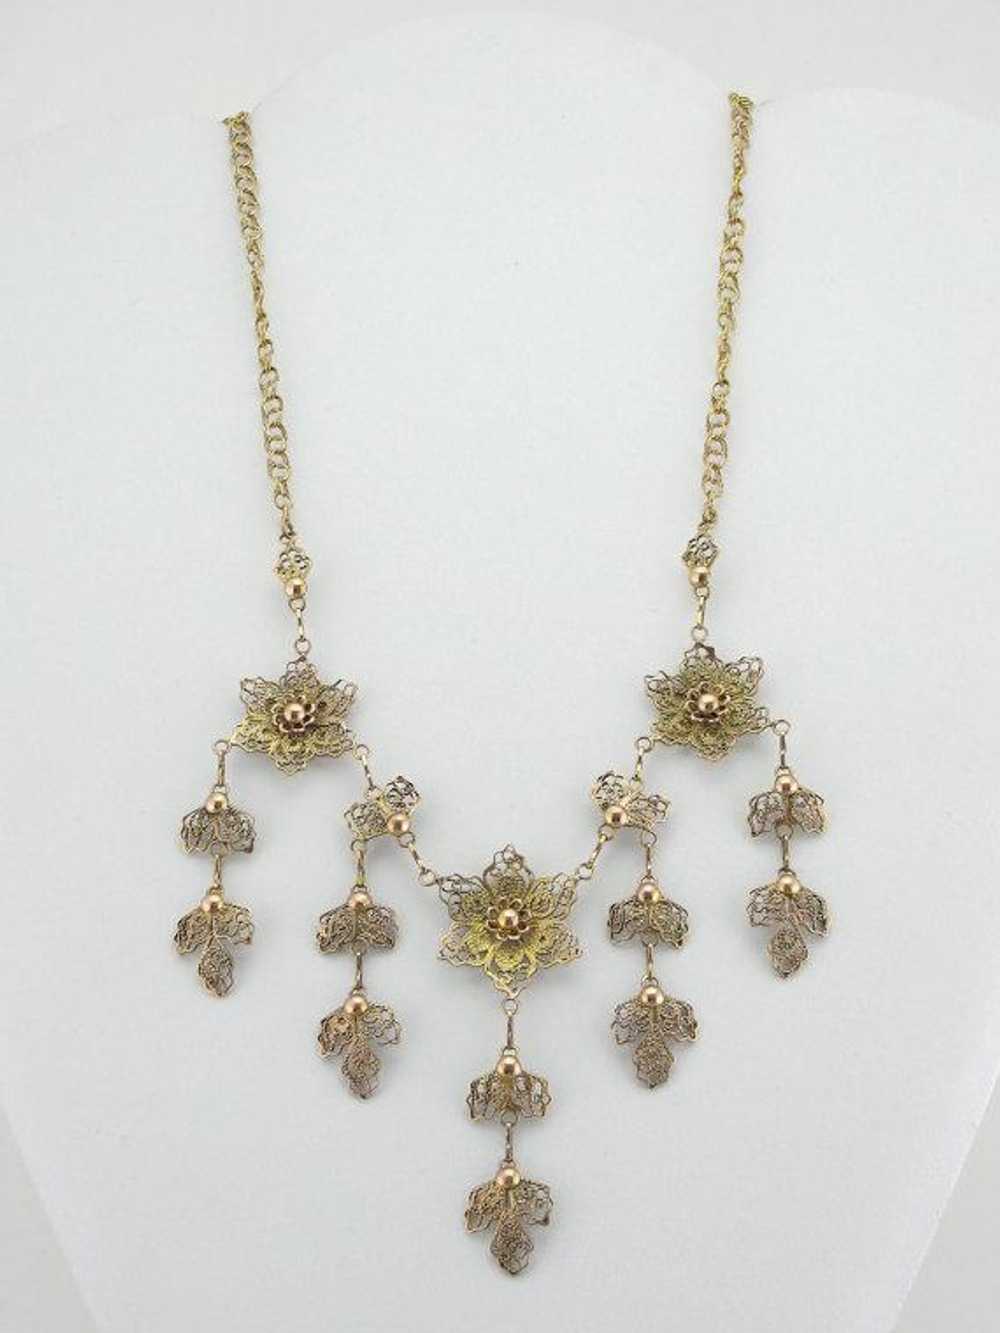 Vintage Floral Gold Filigree Festoon Necklace - image 4